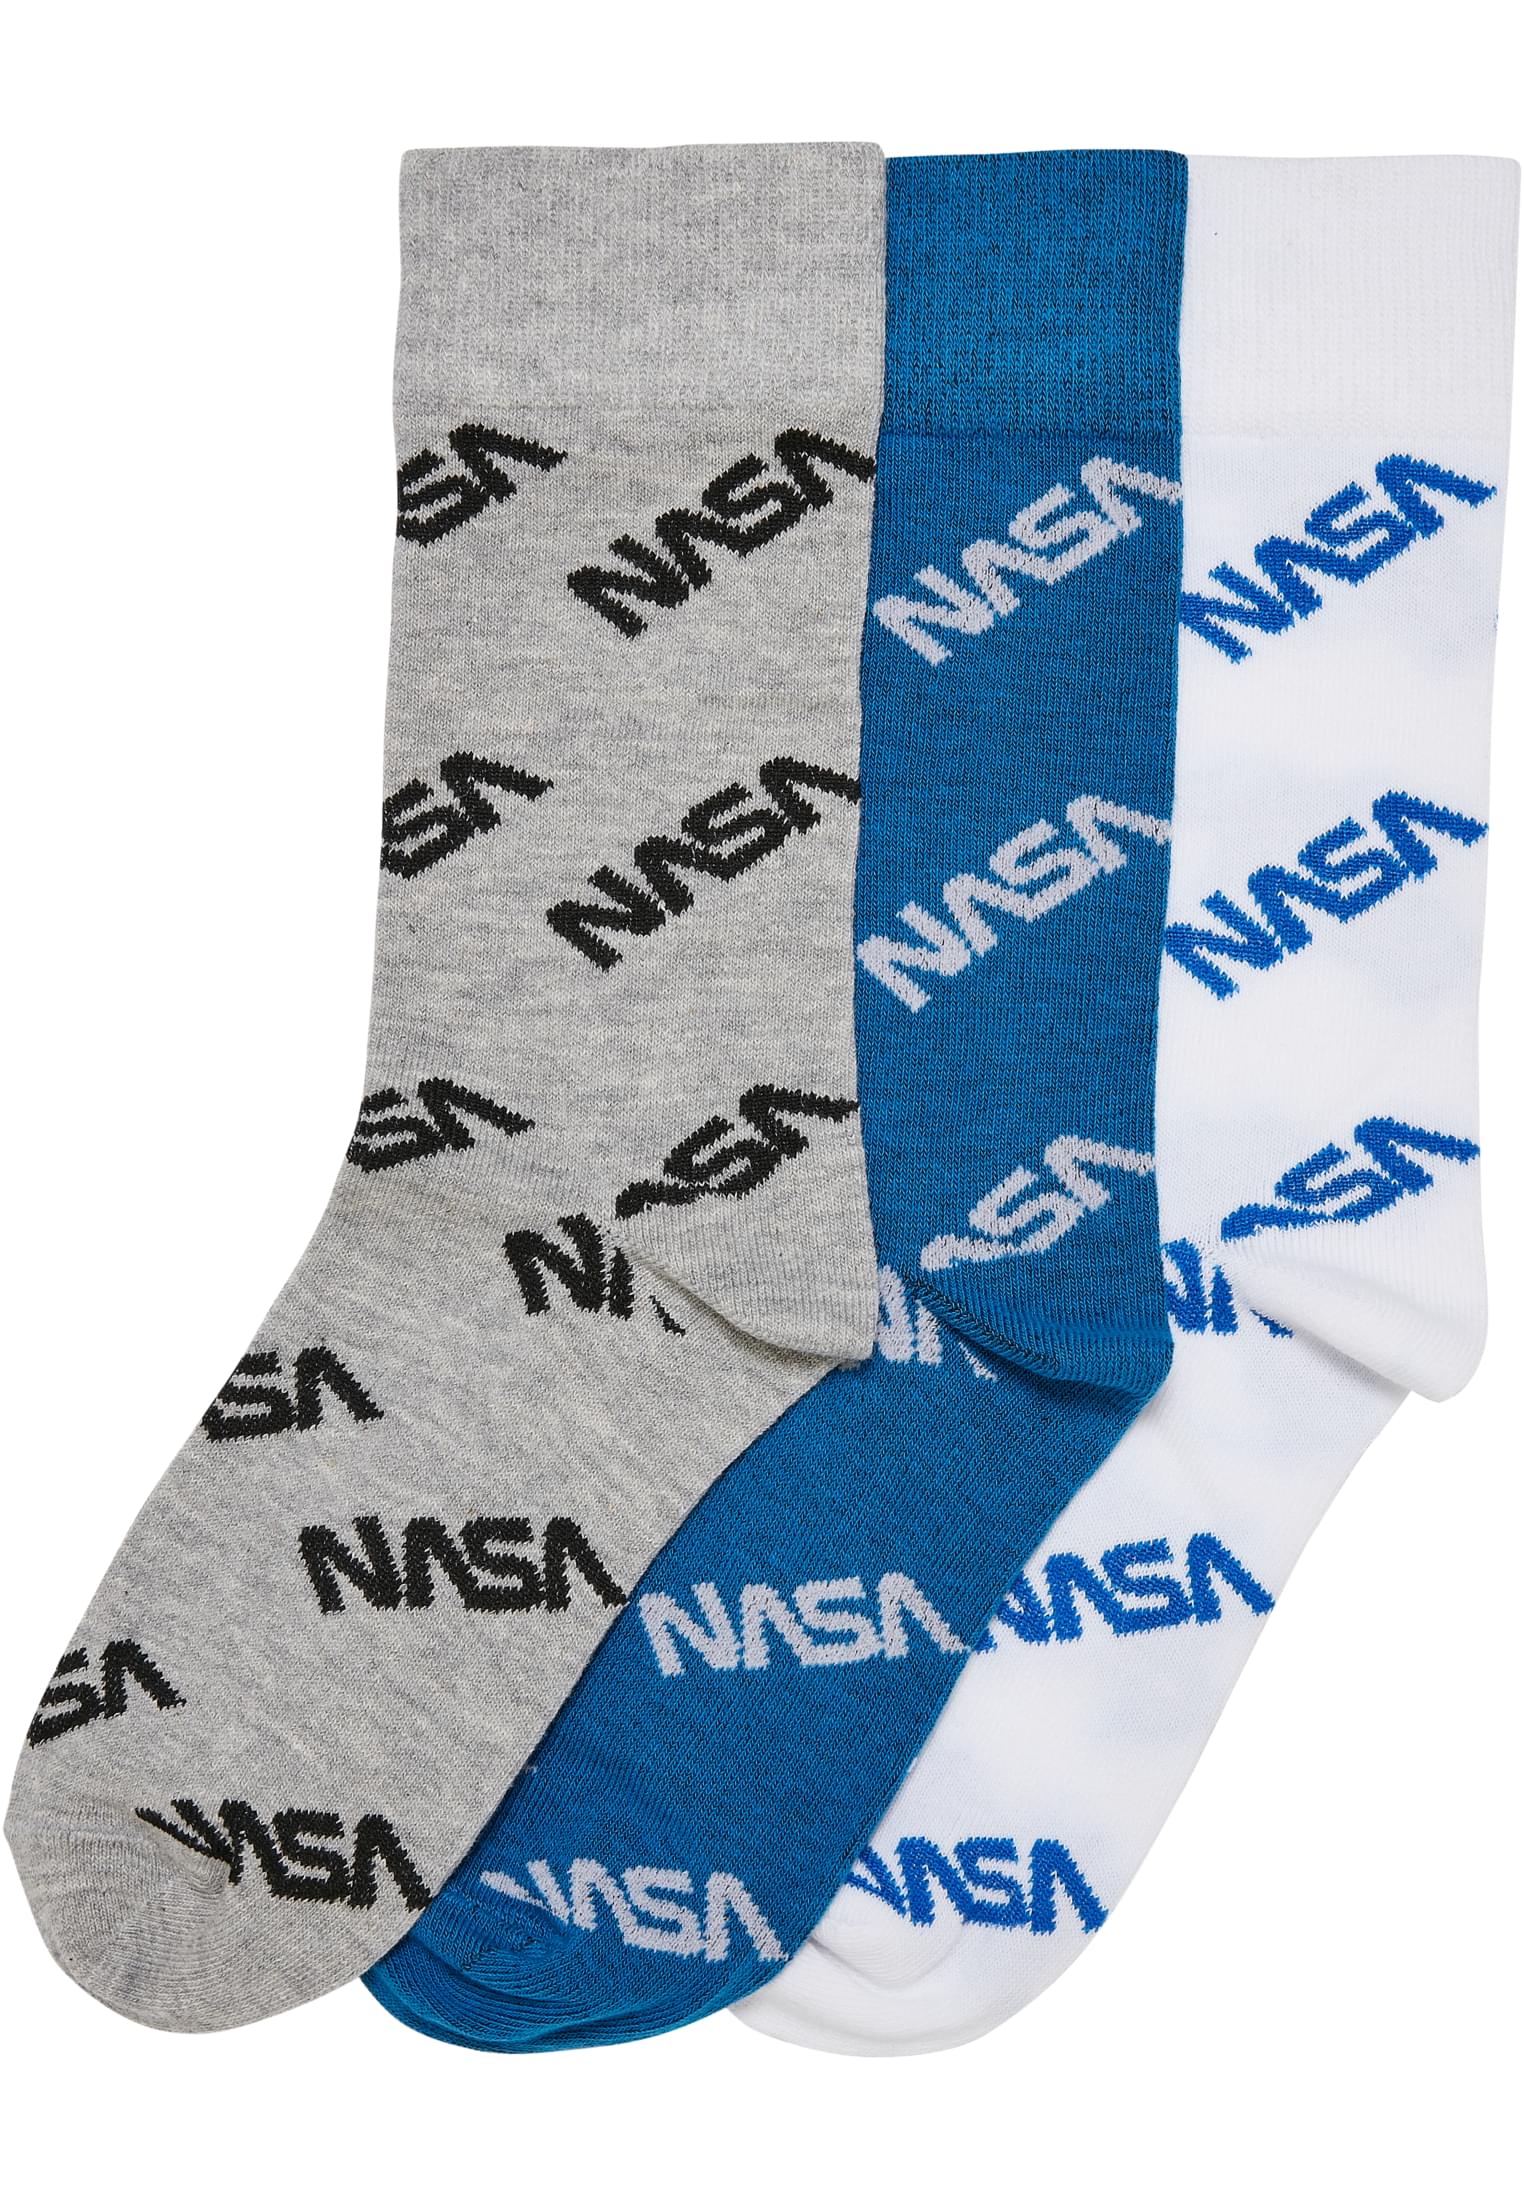 Levně Celoplošné dětské ponožky NASA, 3 balení, zářivě modrá/šedá/bílá